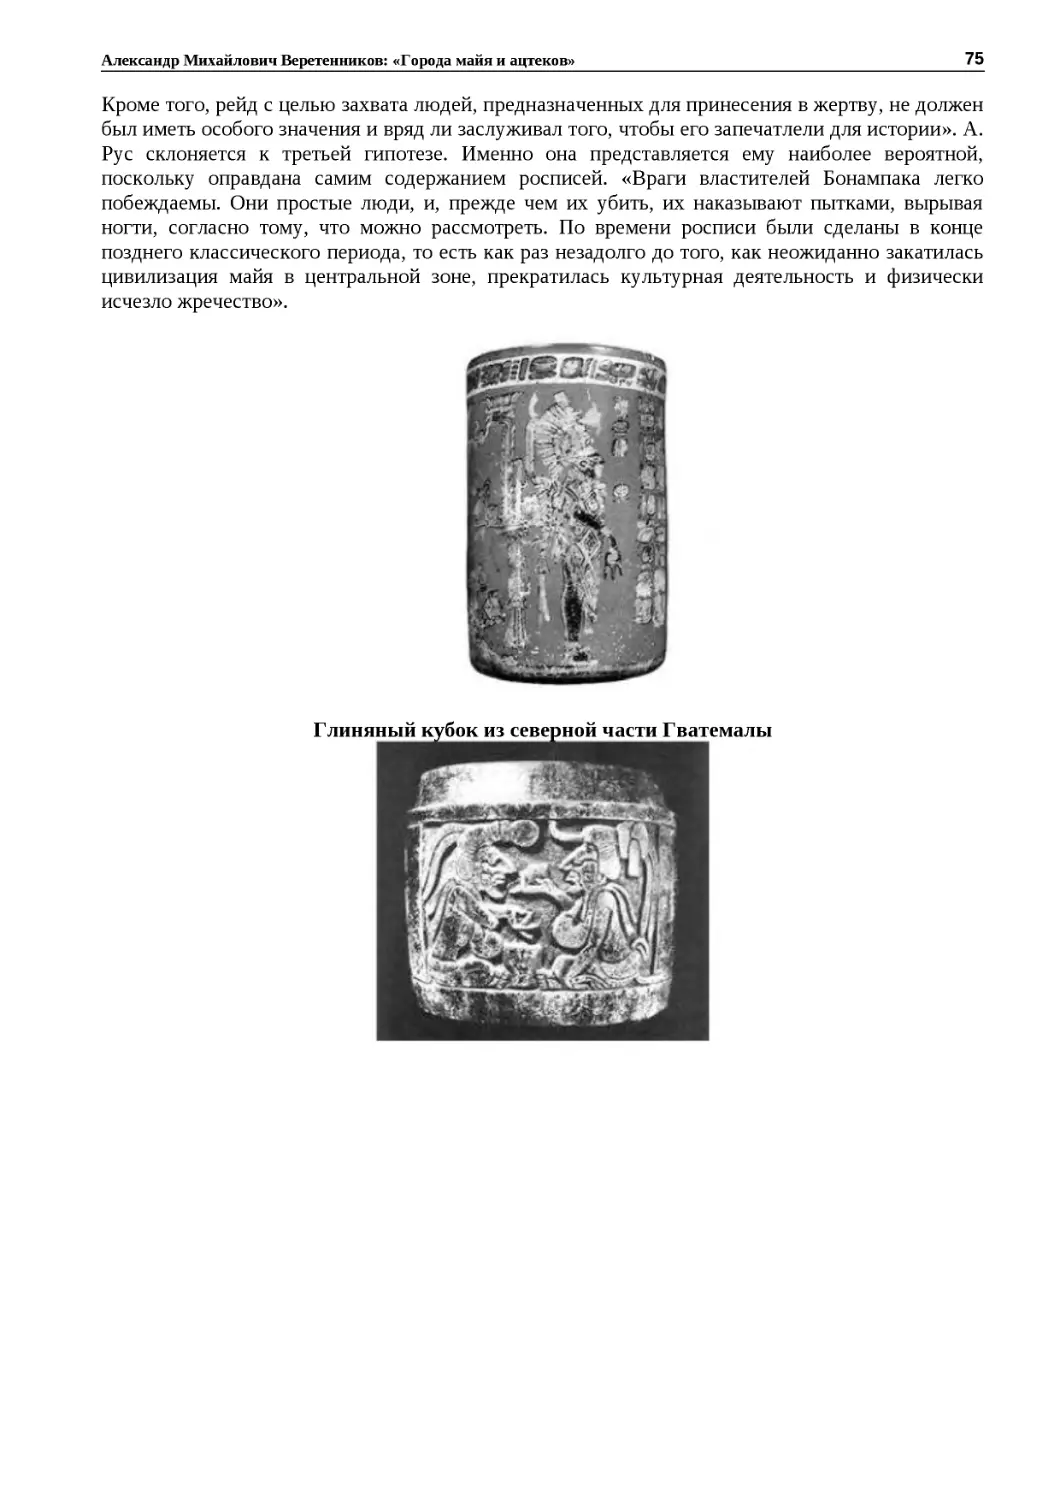 ﻿Глиняный кубок из северной части Гватемал
"